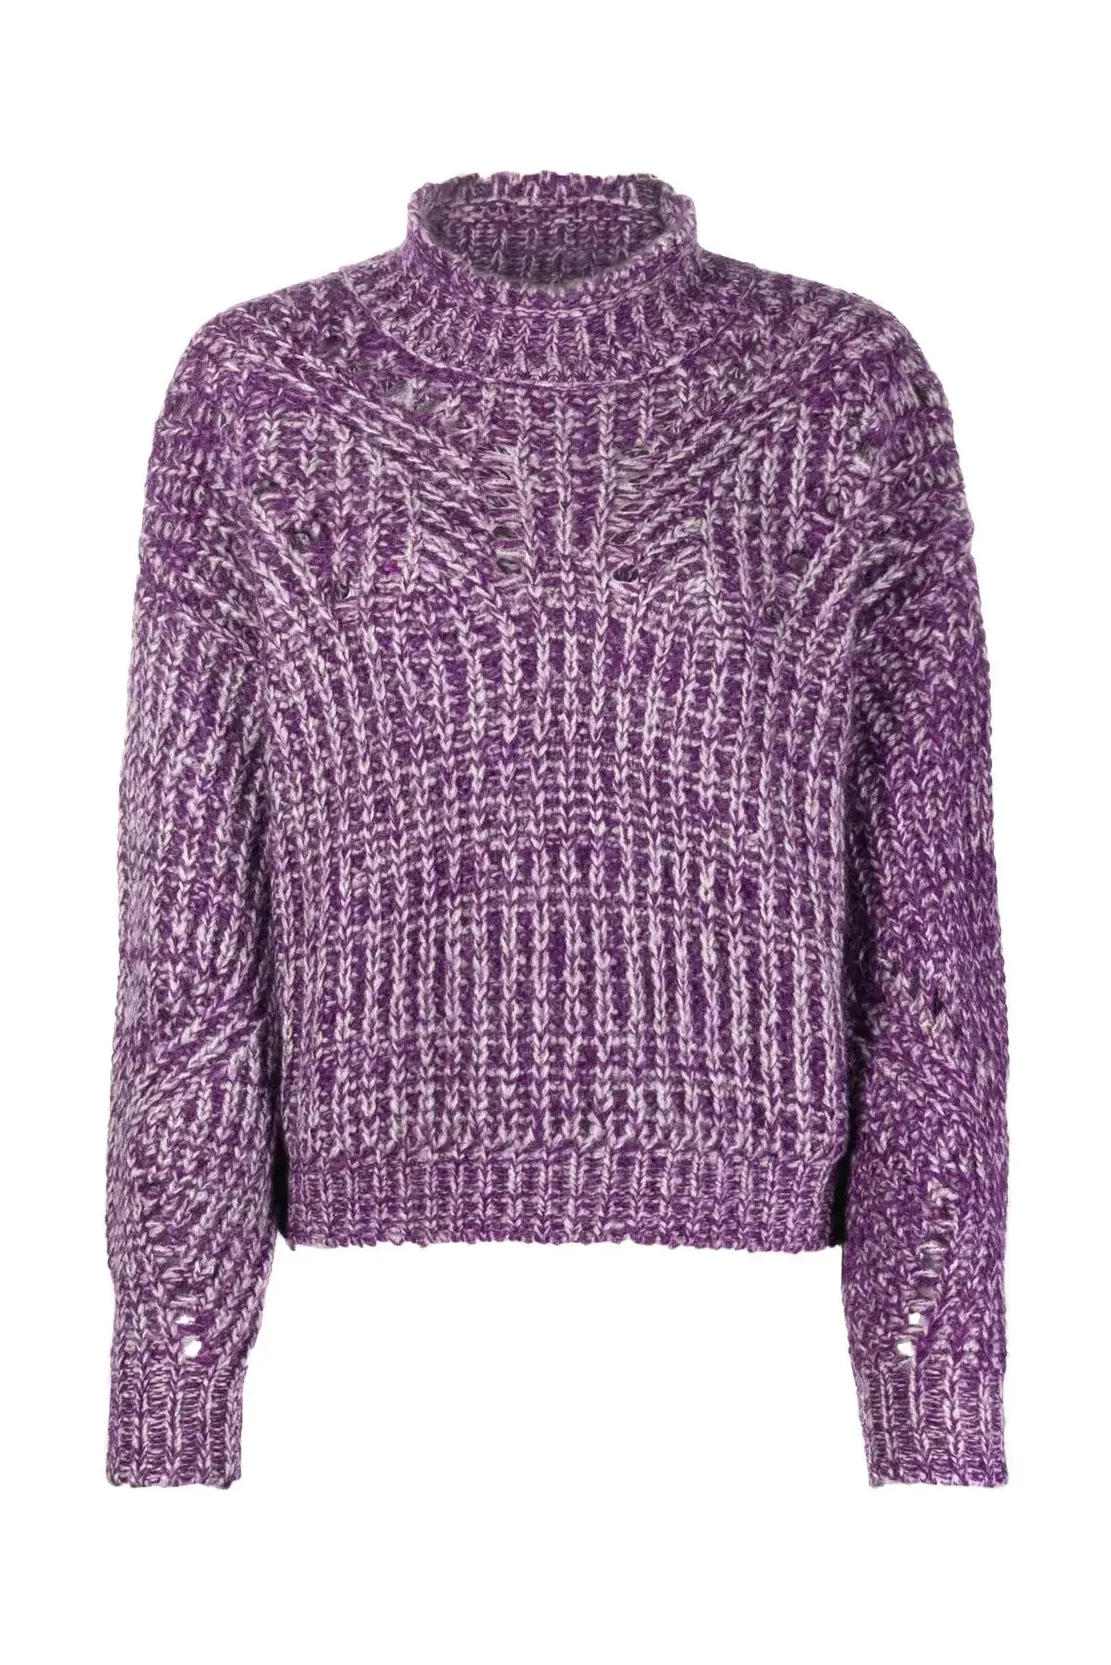 Jarren open-knit jumper, purple